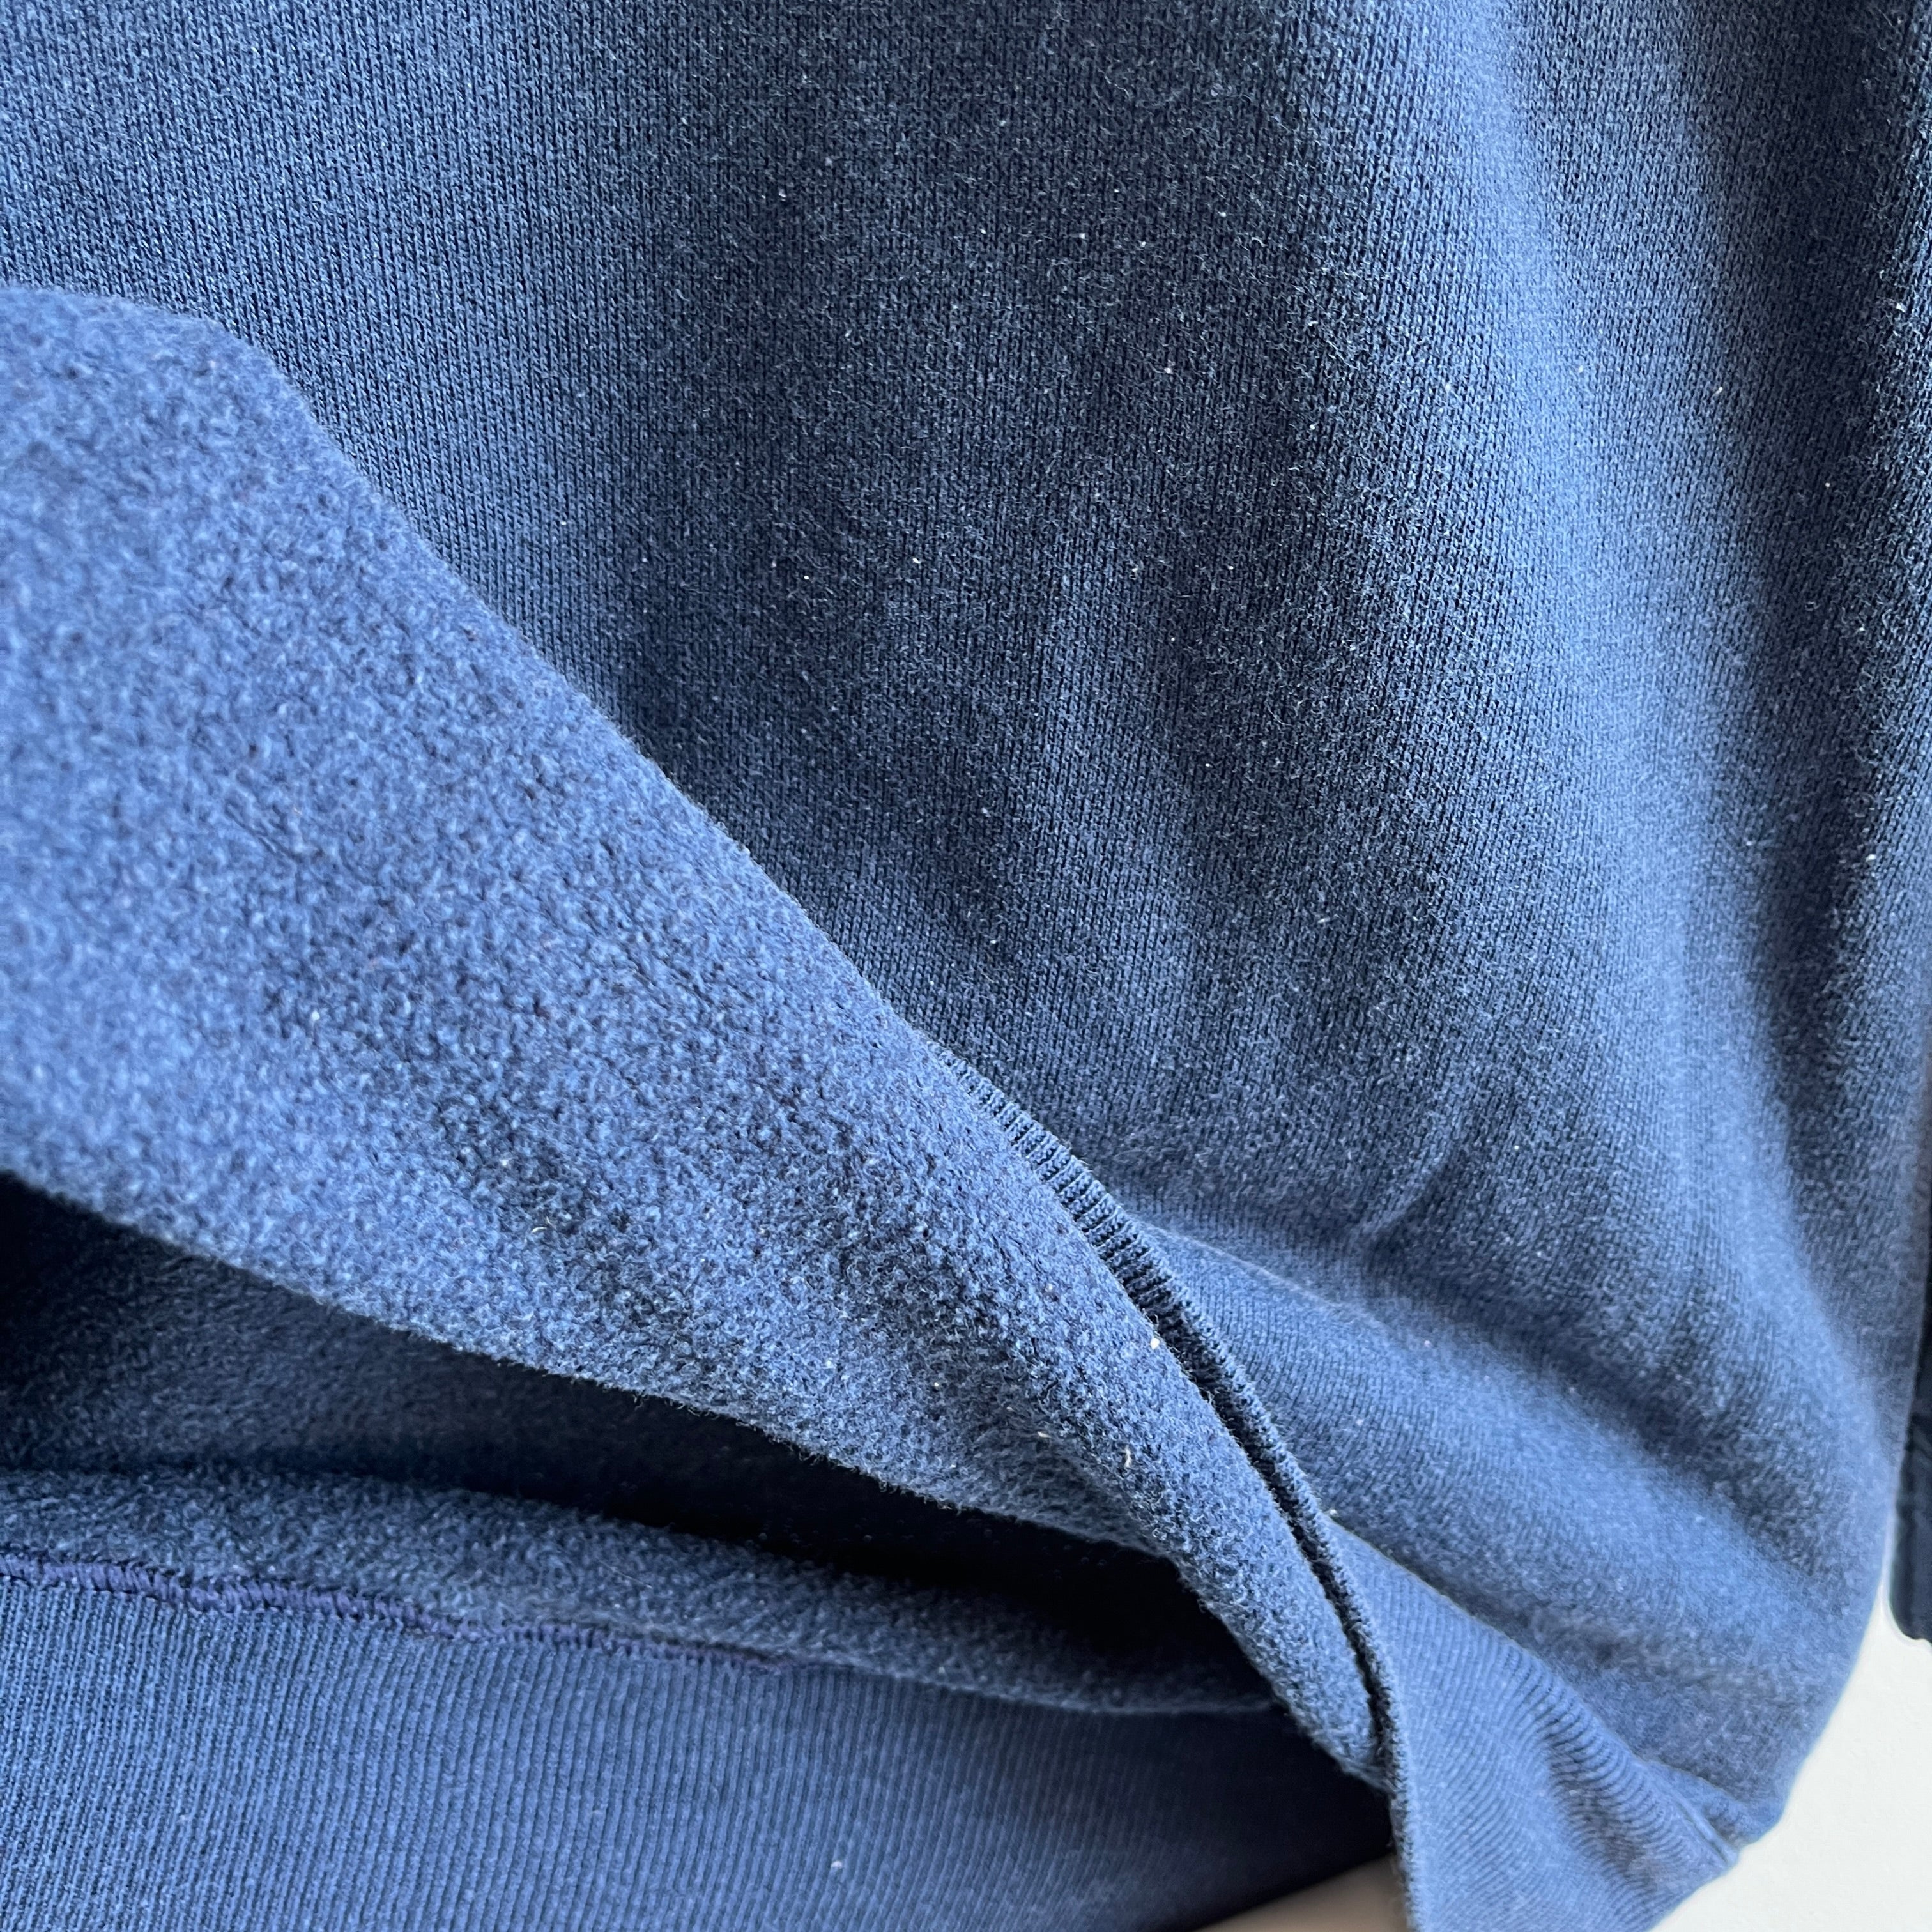 1990s Faded Navy Hanes Activewear USA Made Sweatshirt